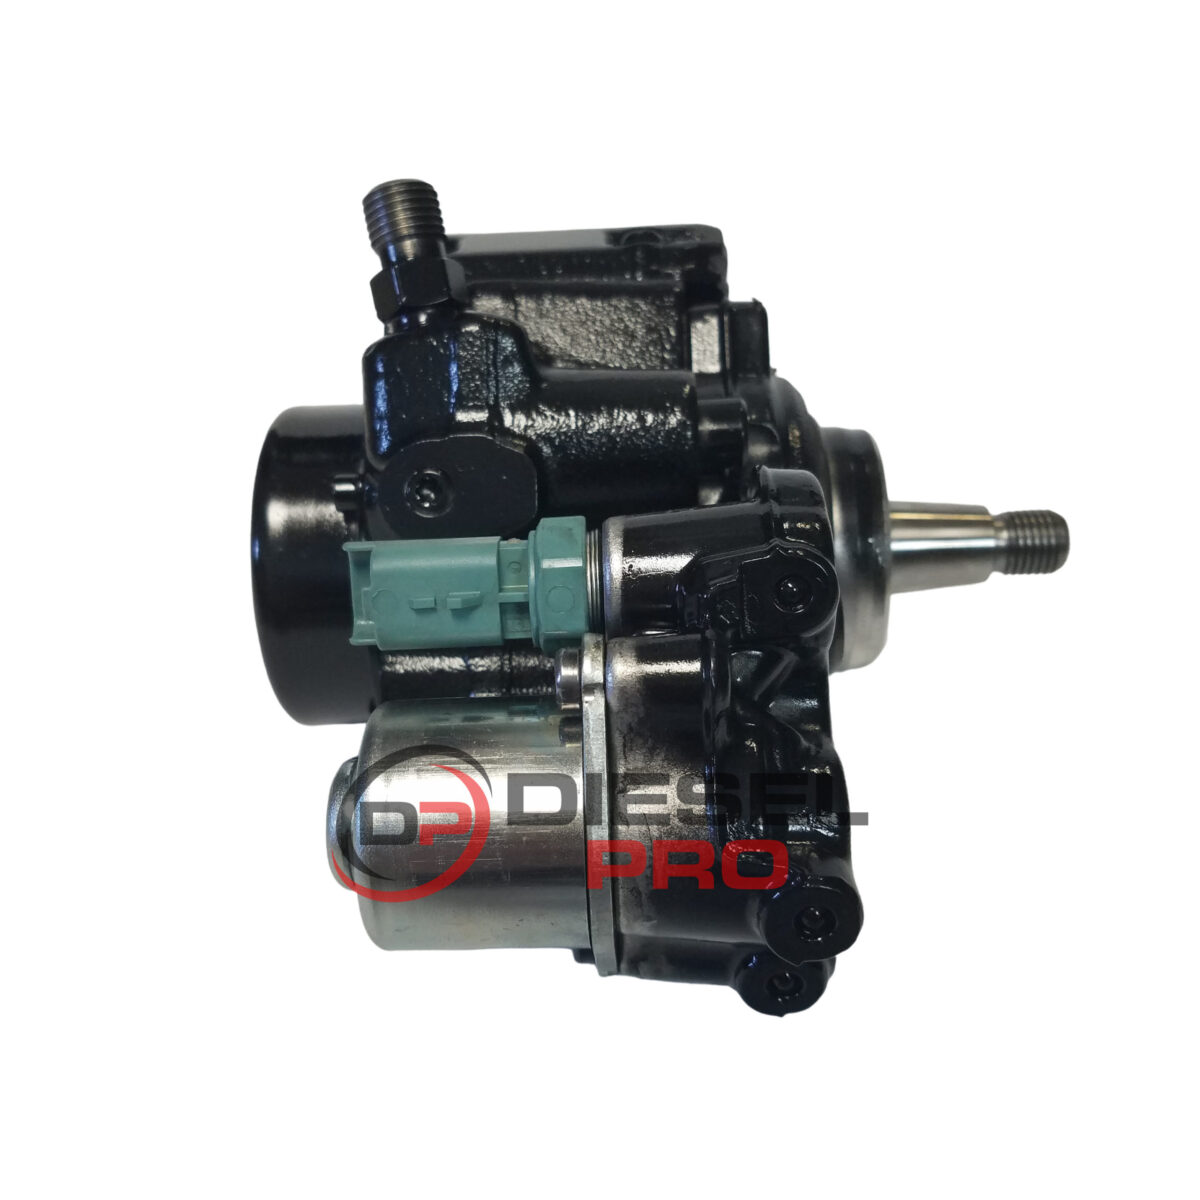 7249380 | Reman Fuel Pump for D24 Doosan Bobcat (7516847)